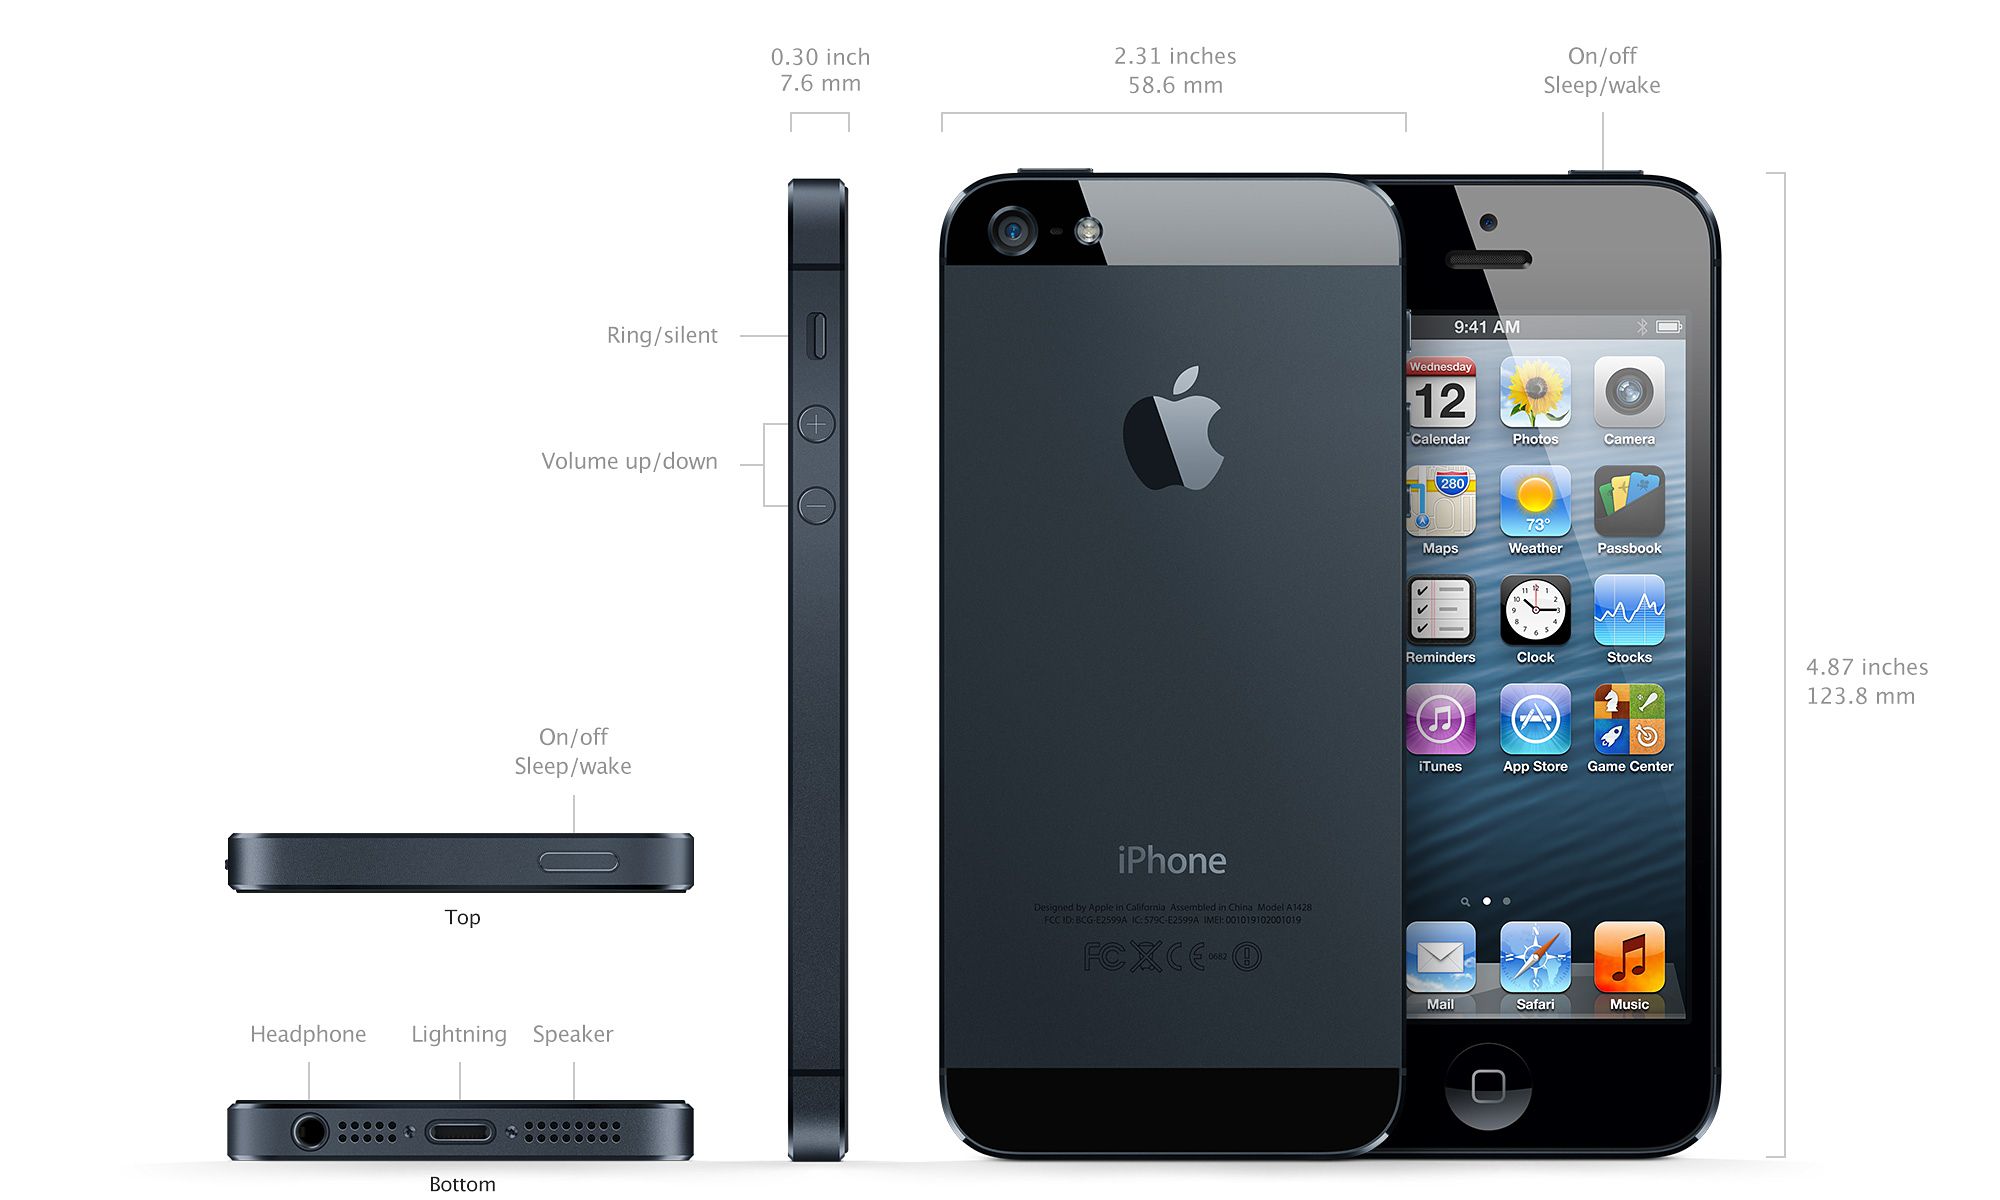 Обзор Apple iPhone 5